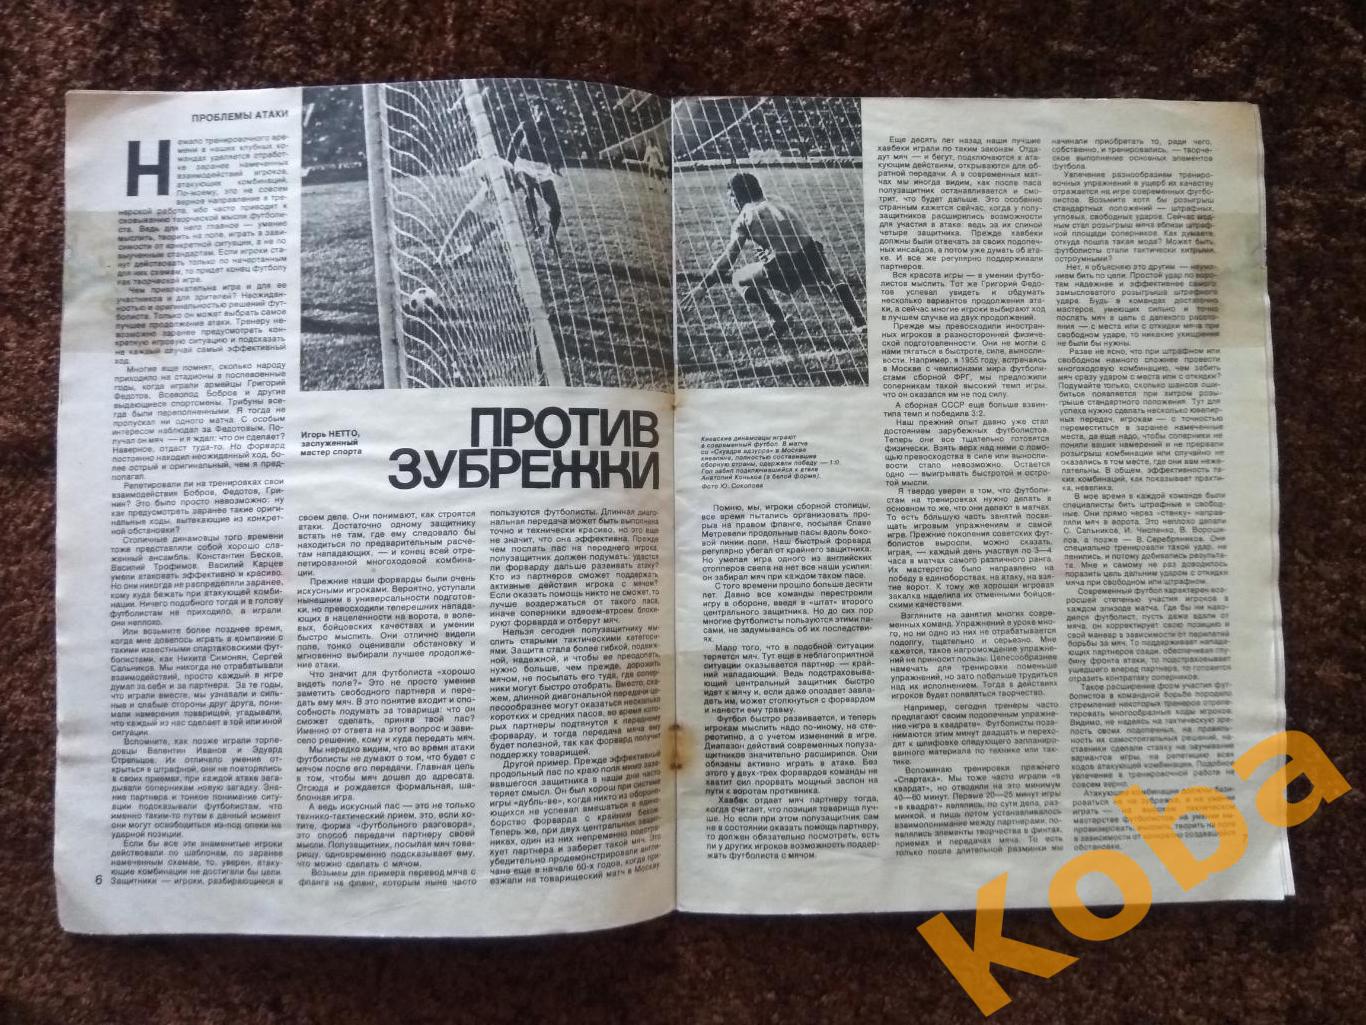 Спортивные игры 1975 №8 Хоккей Третьяк Футбол Бышовец Нетто Волейбол Кондра Тенн 4